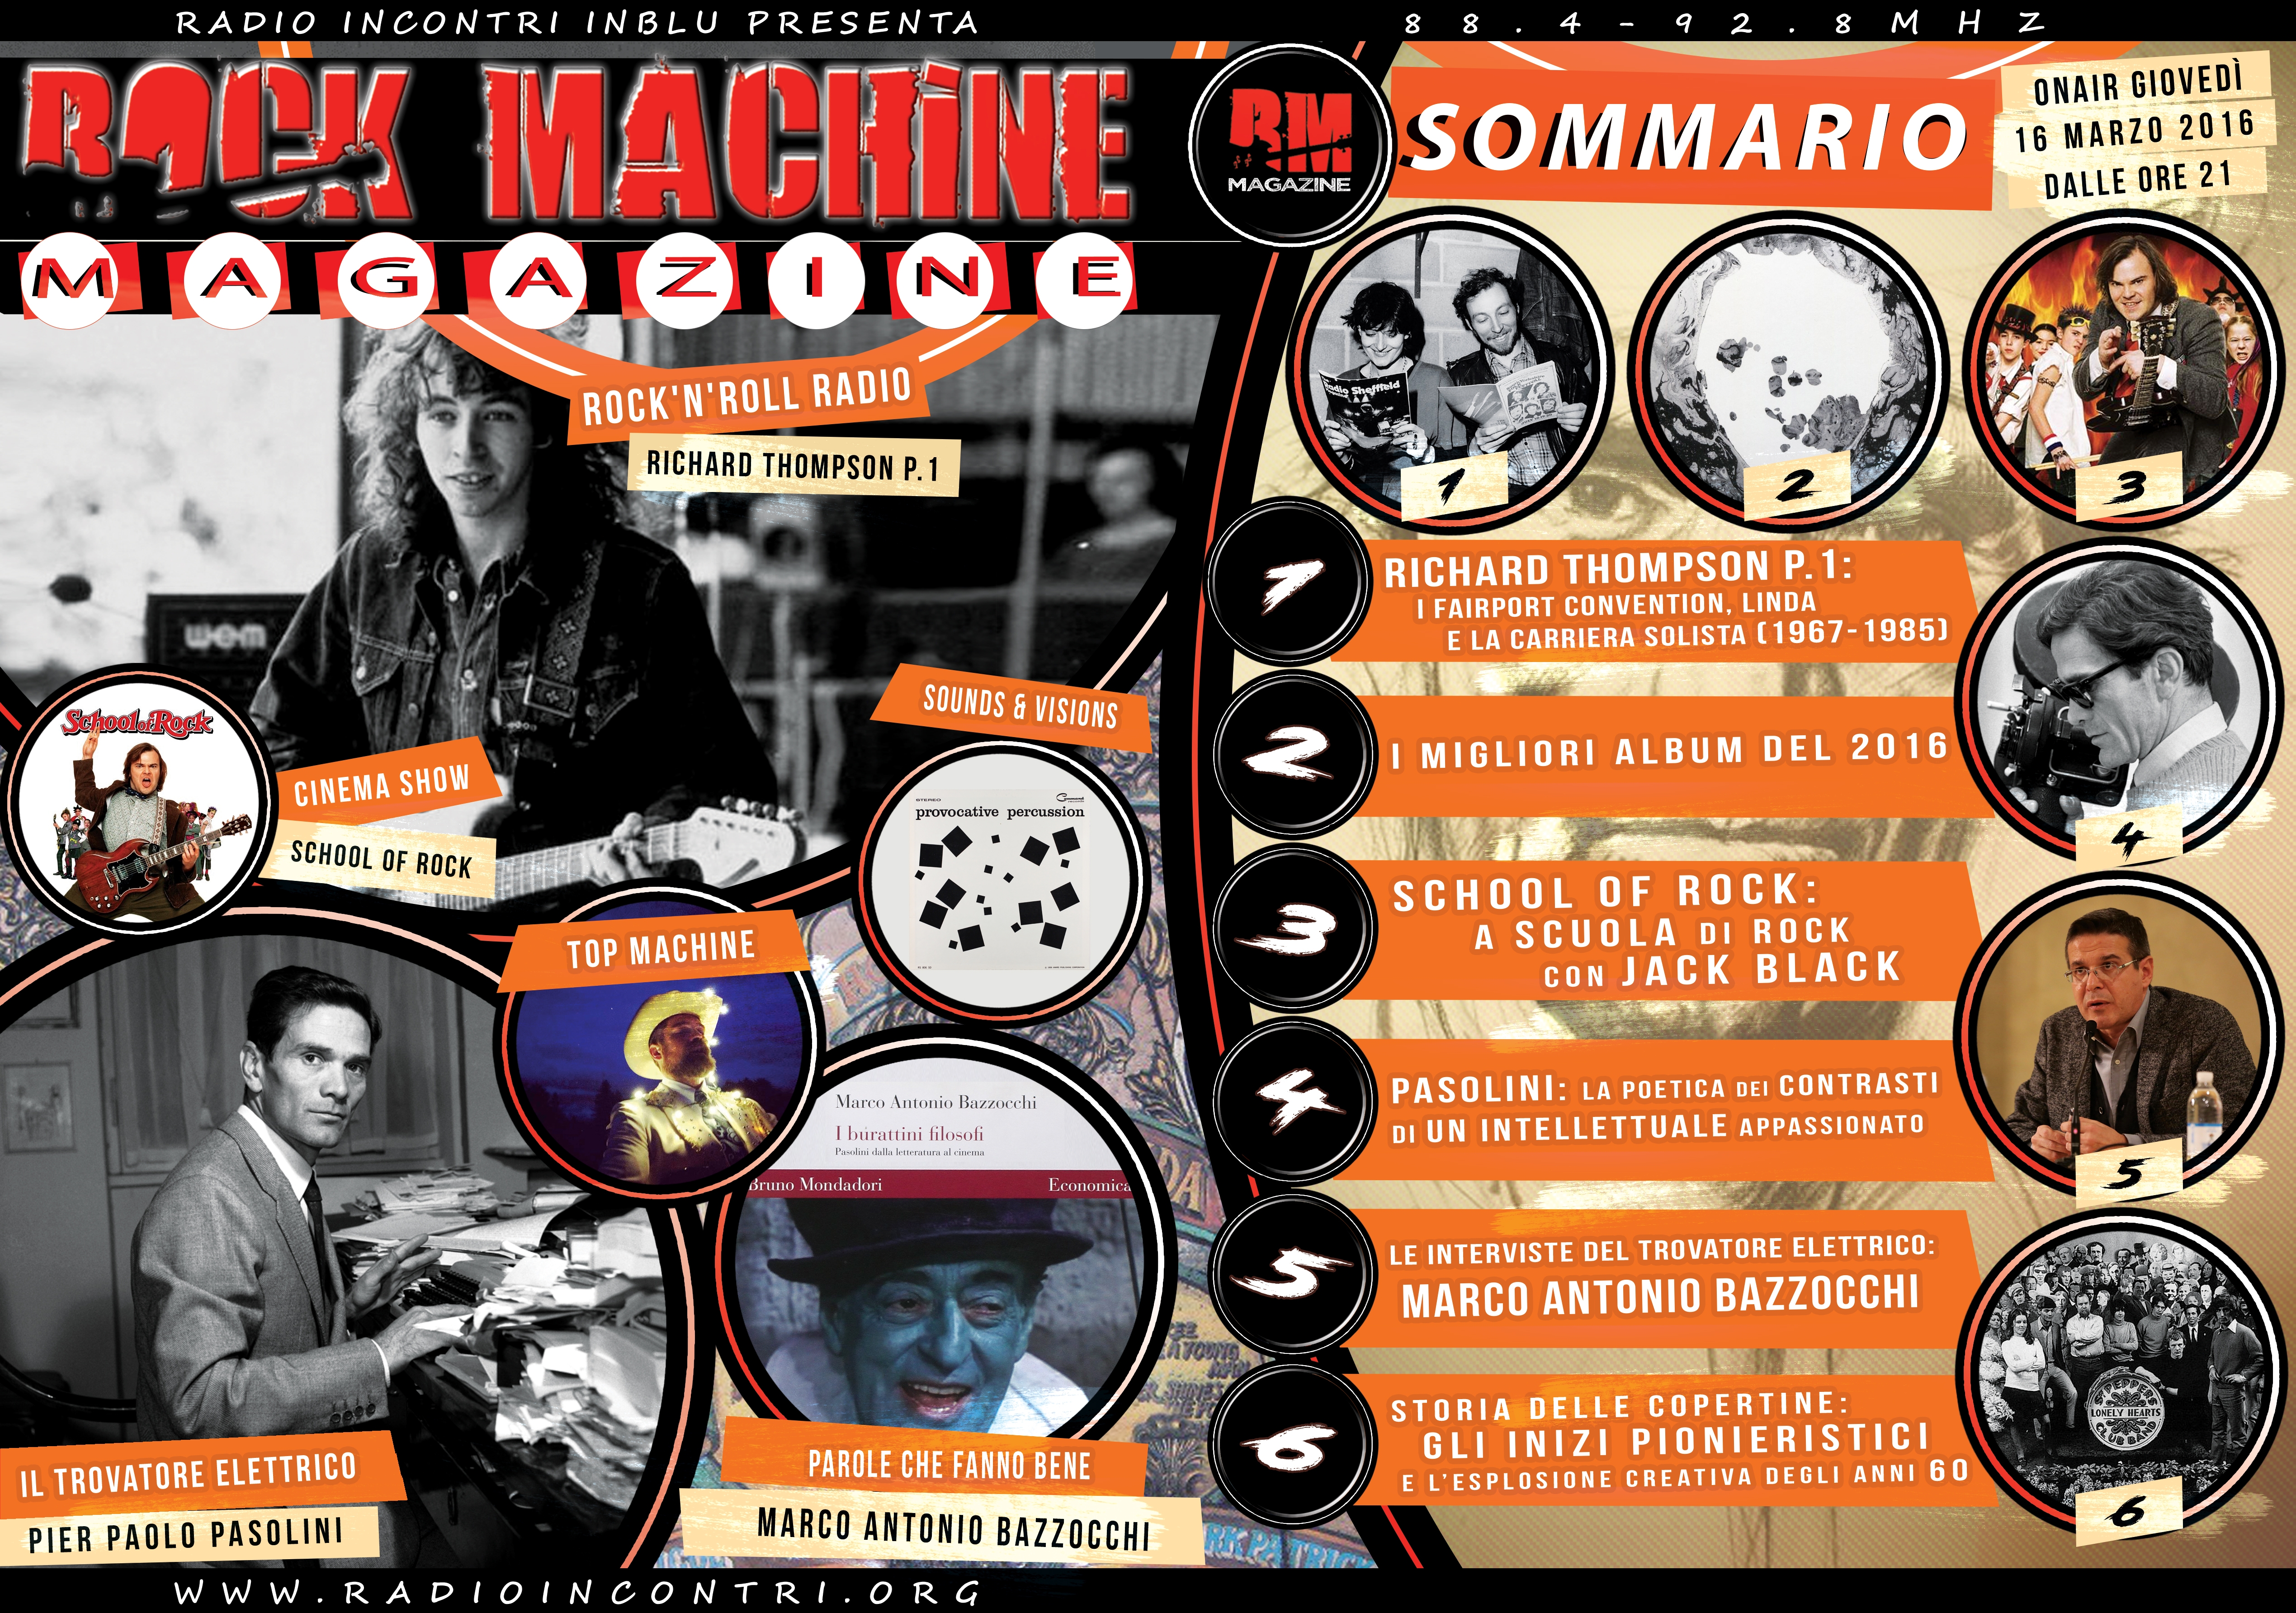 Rock Machine Magazine, sesta puntata: dai Fairport Convention alla storia delle copertine dei dischi, passando per Pasolini